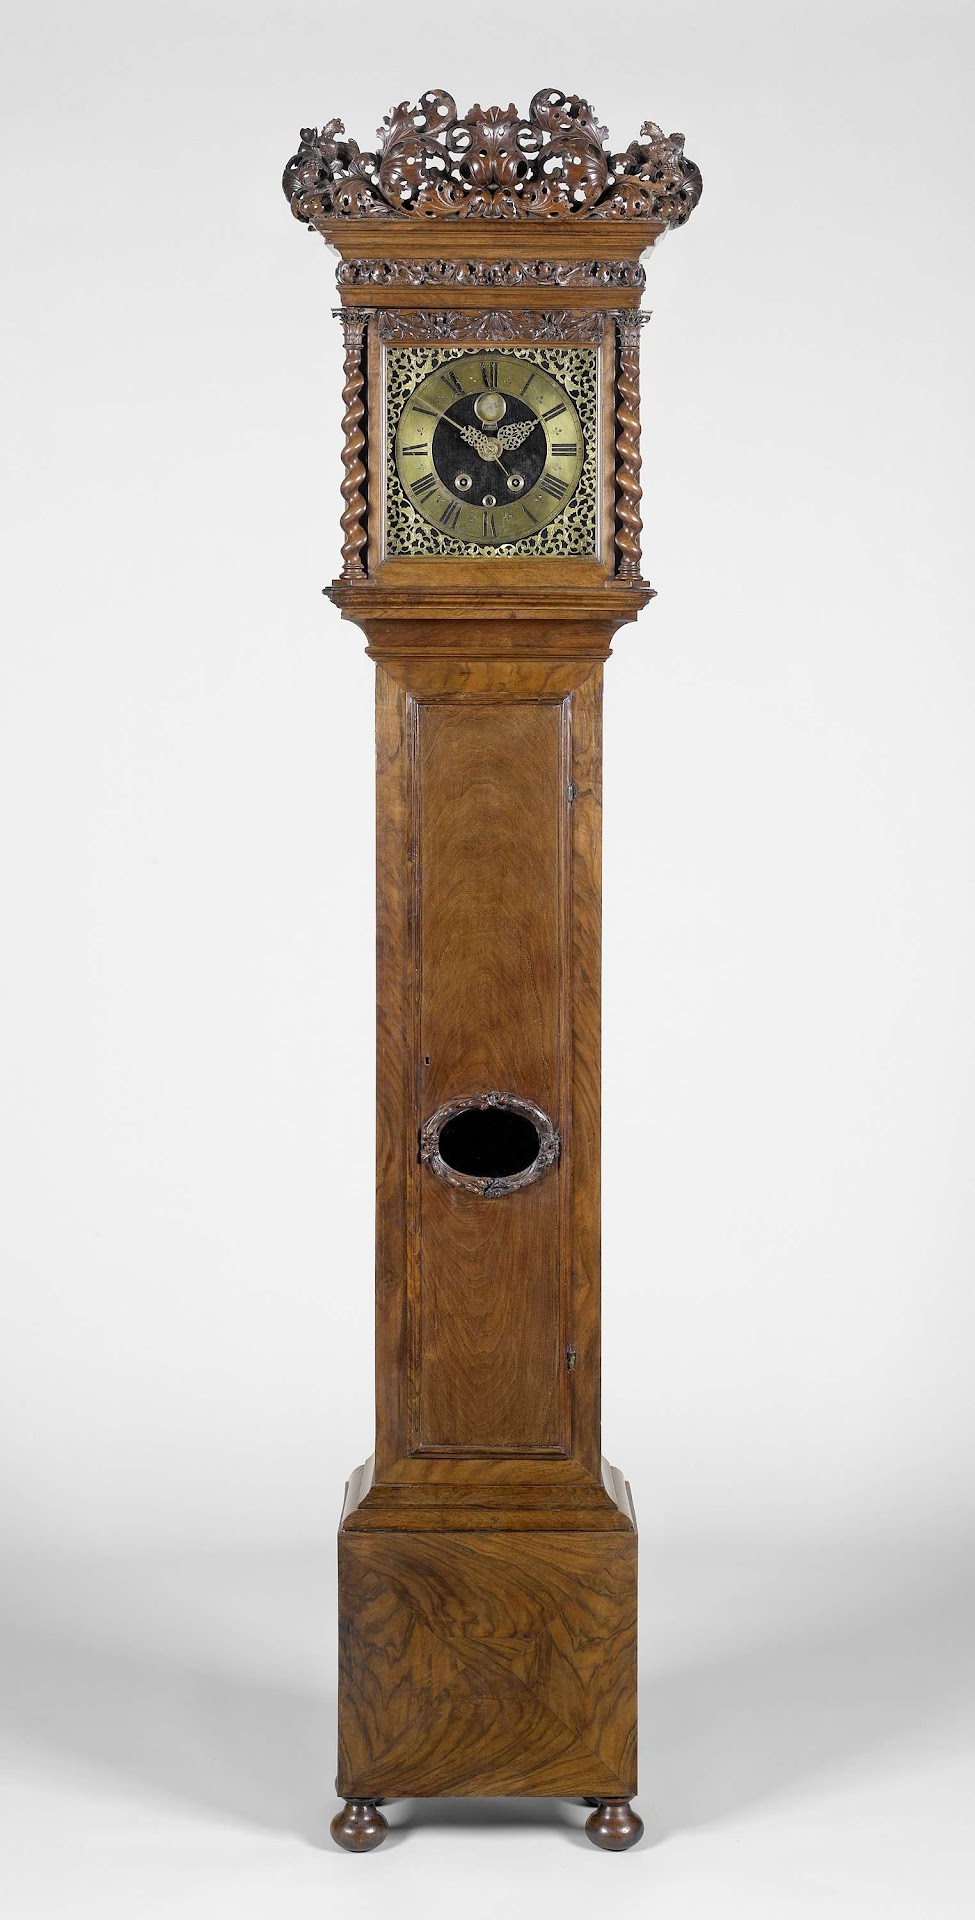 Staande klok, anoniem, 1690 - 1695 - Rijksmuseum